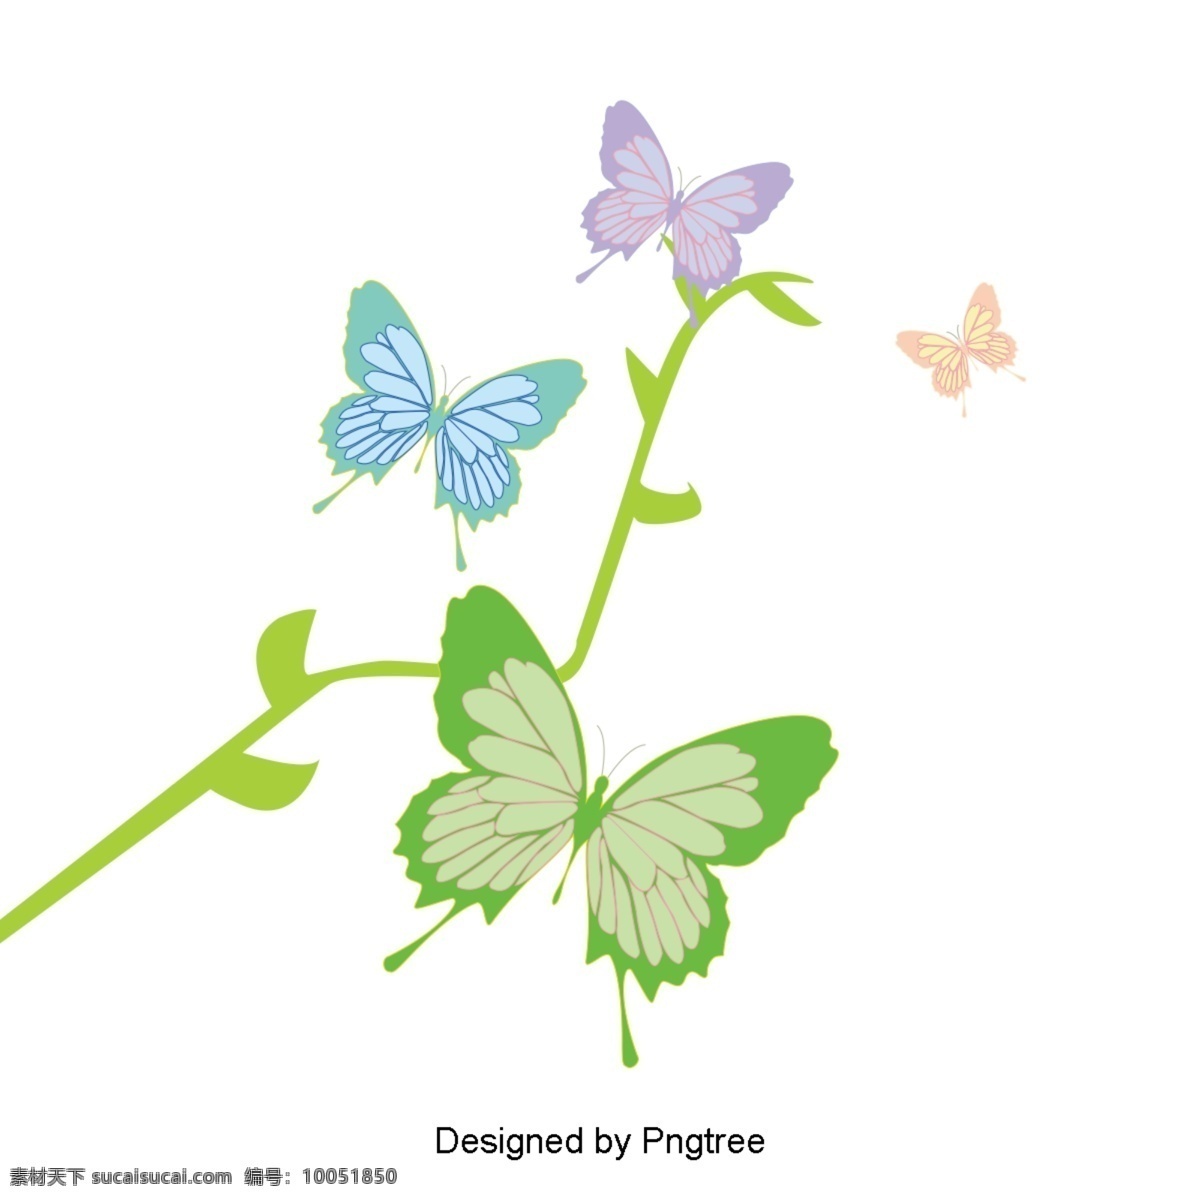 卡通 手绘 美丽 蝴蝶 图案 昆虫 花卉 植物 简单 树枝 颜色 装饰